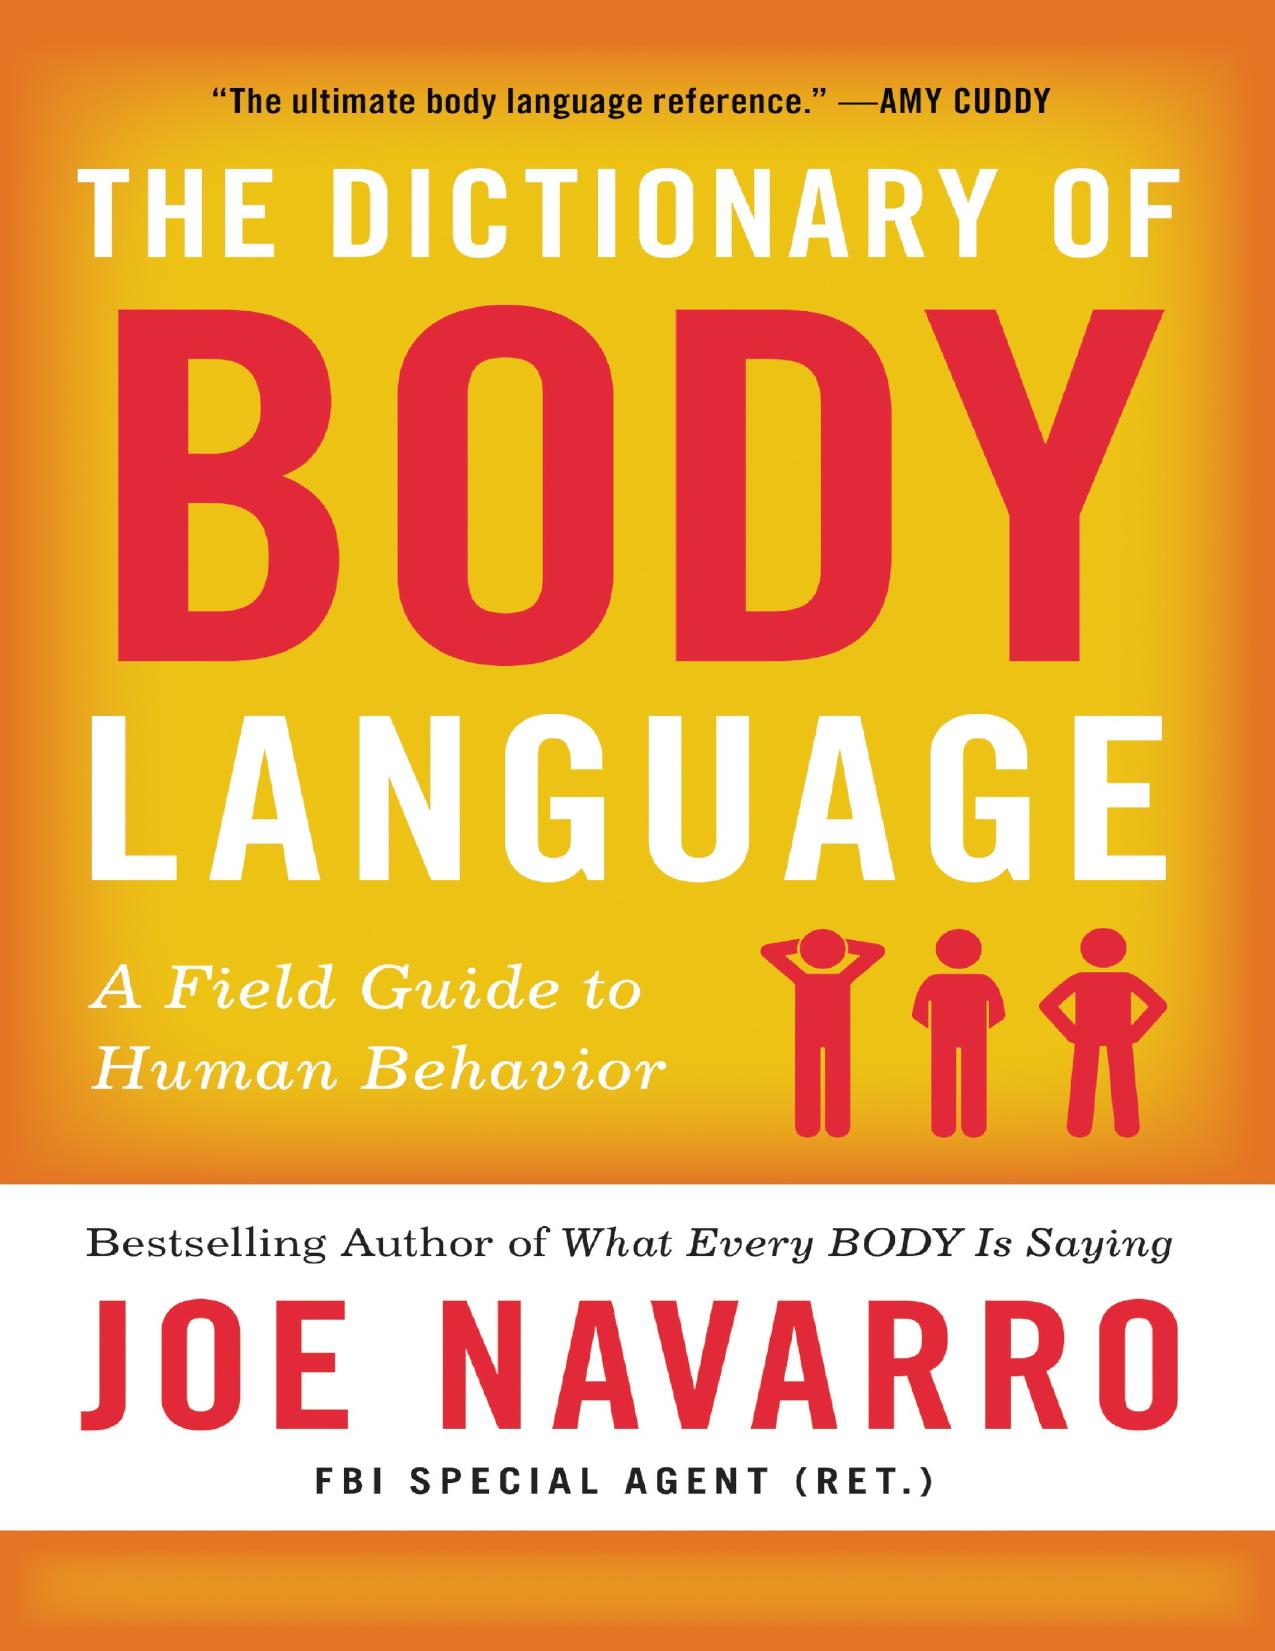 The Dictionary of Body Language by Joe Navarro